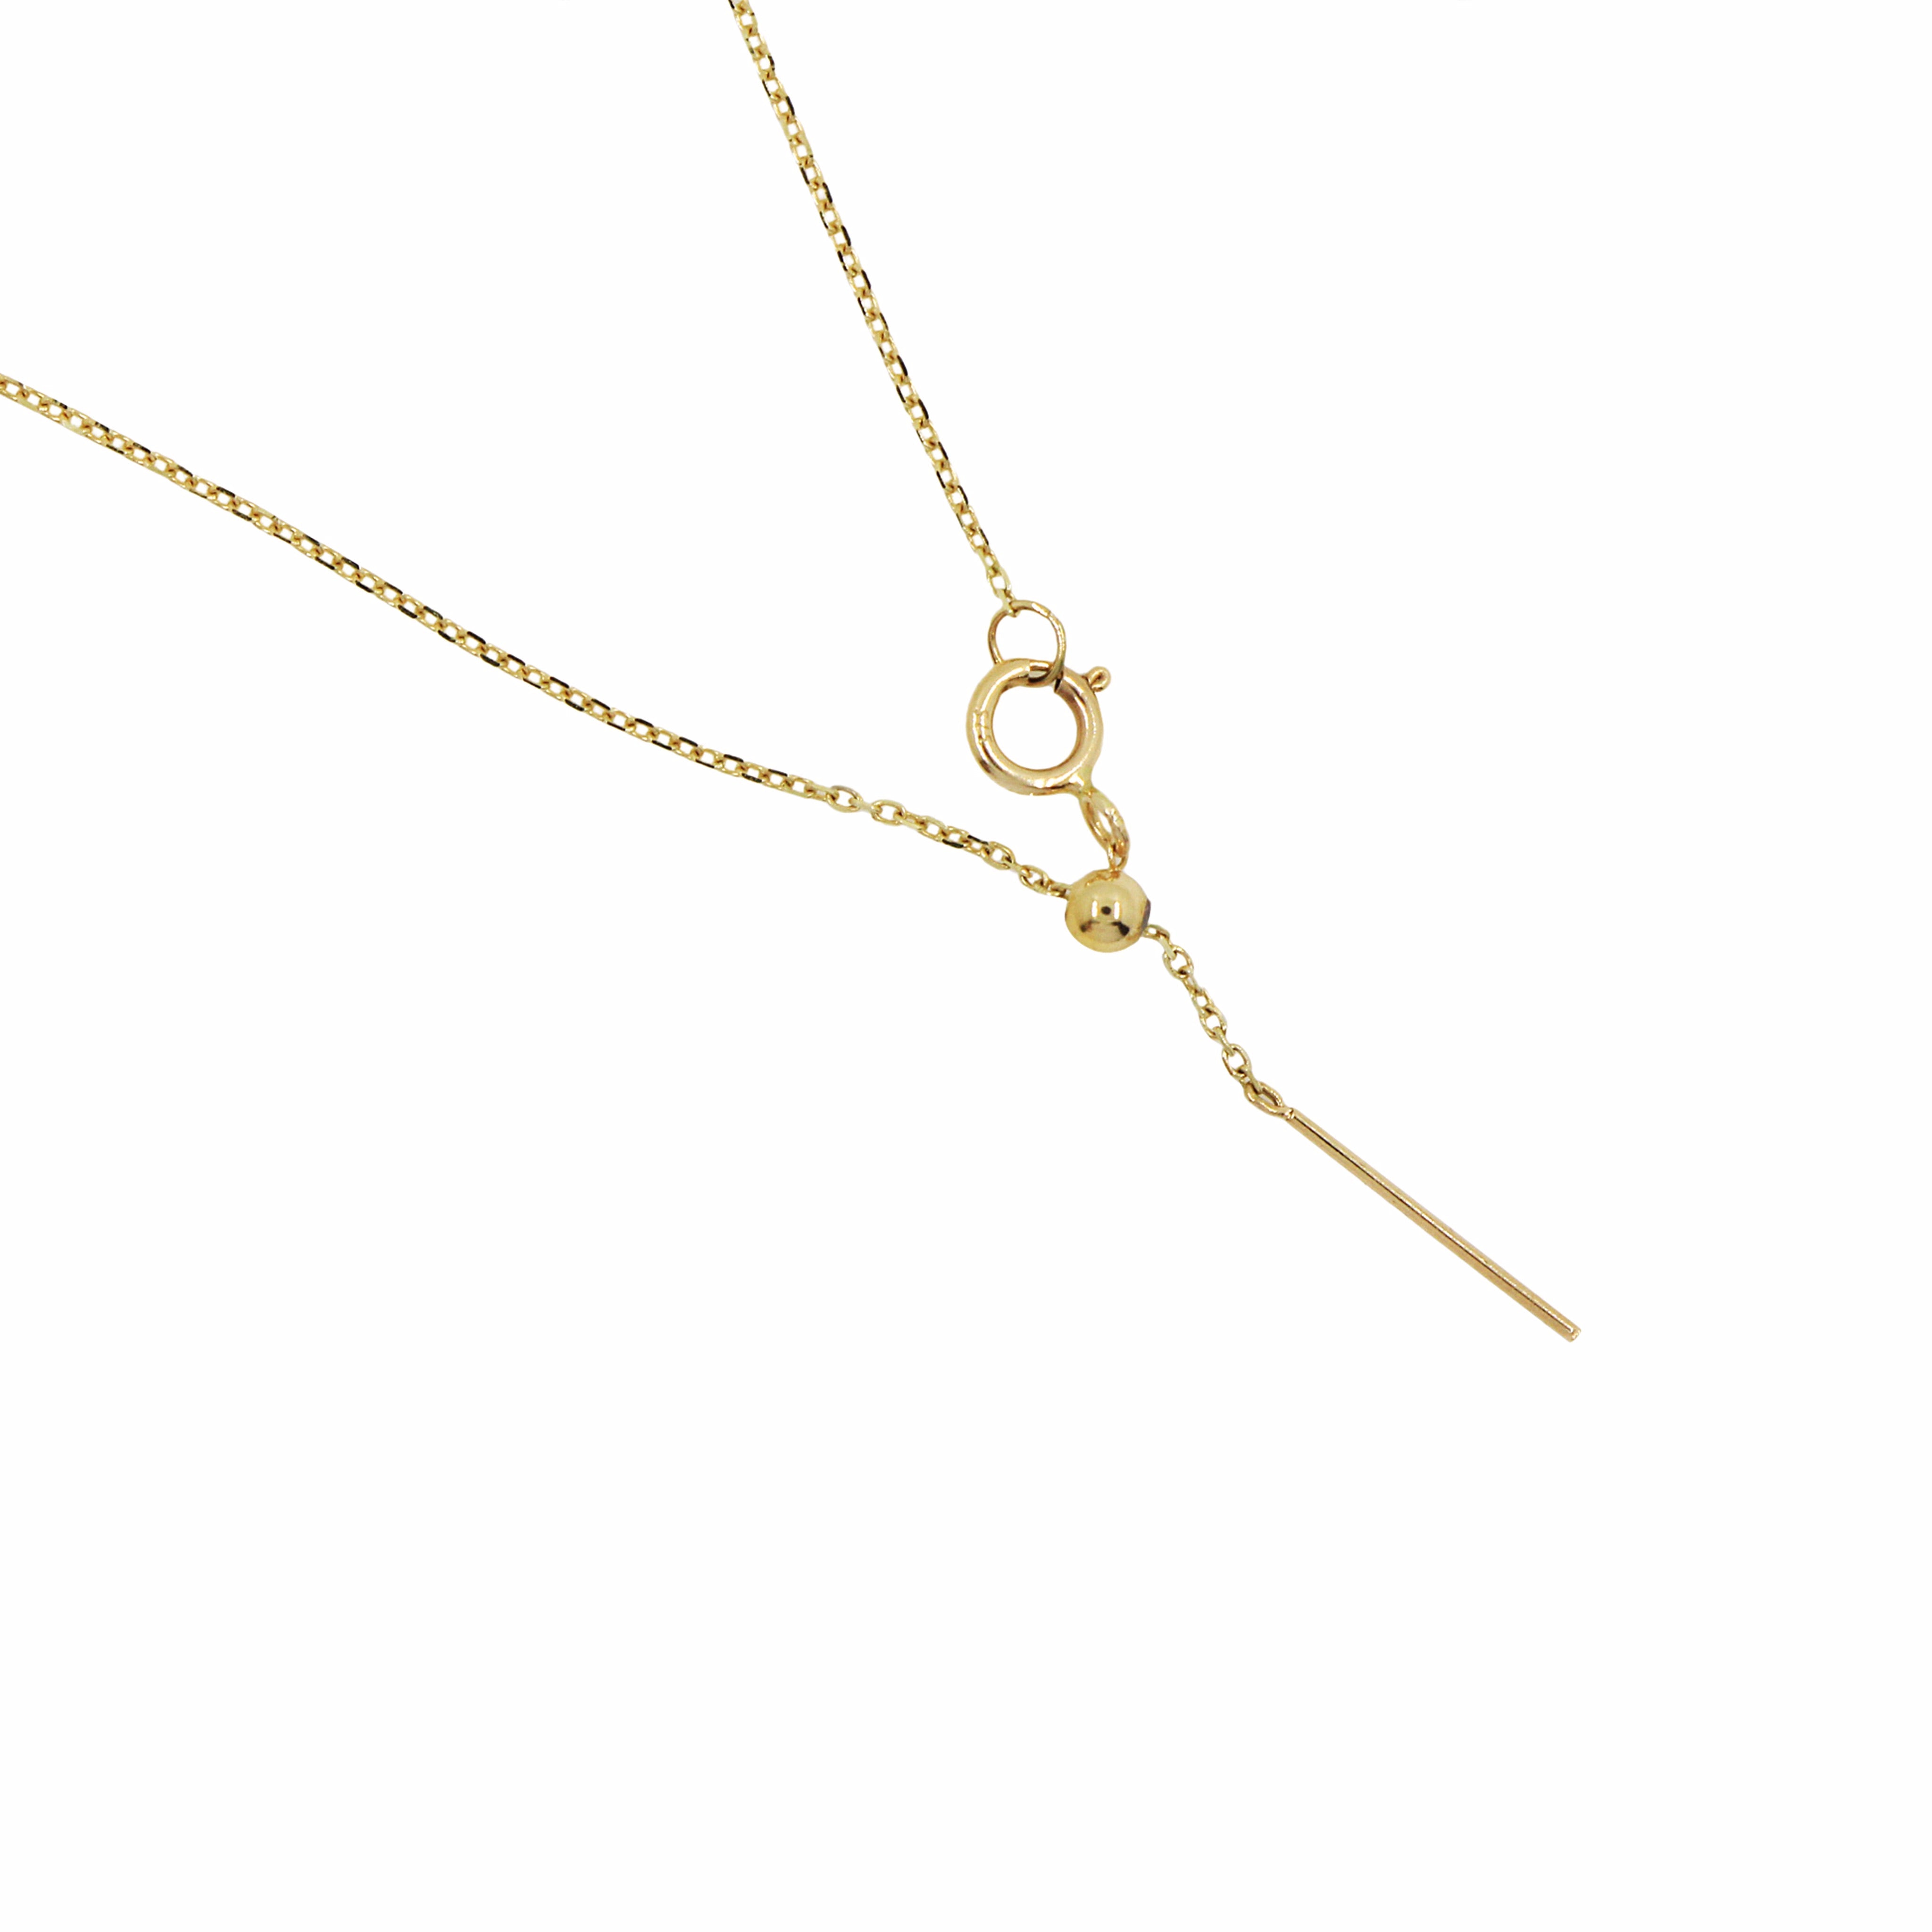 Shop Gosia Orlowska's Gold Libra Necklace